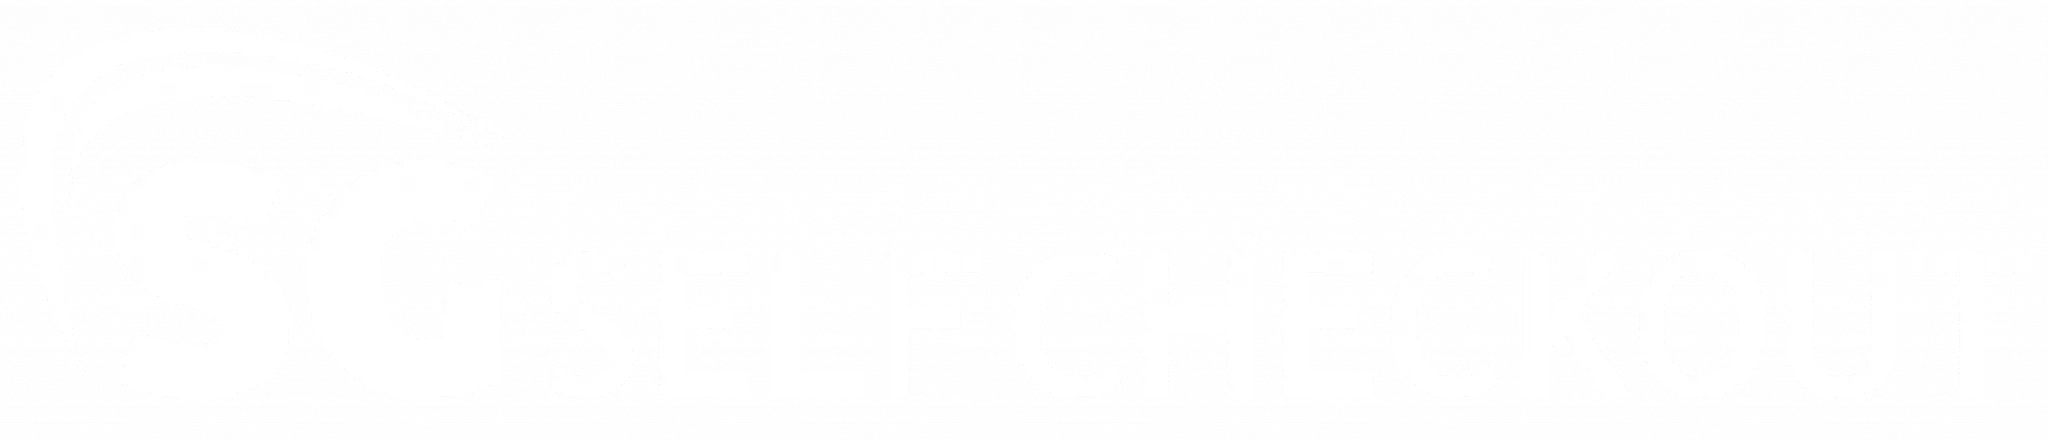 uma foto em preto e branco de um logotipo